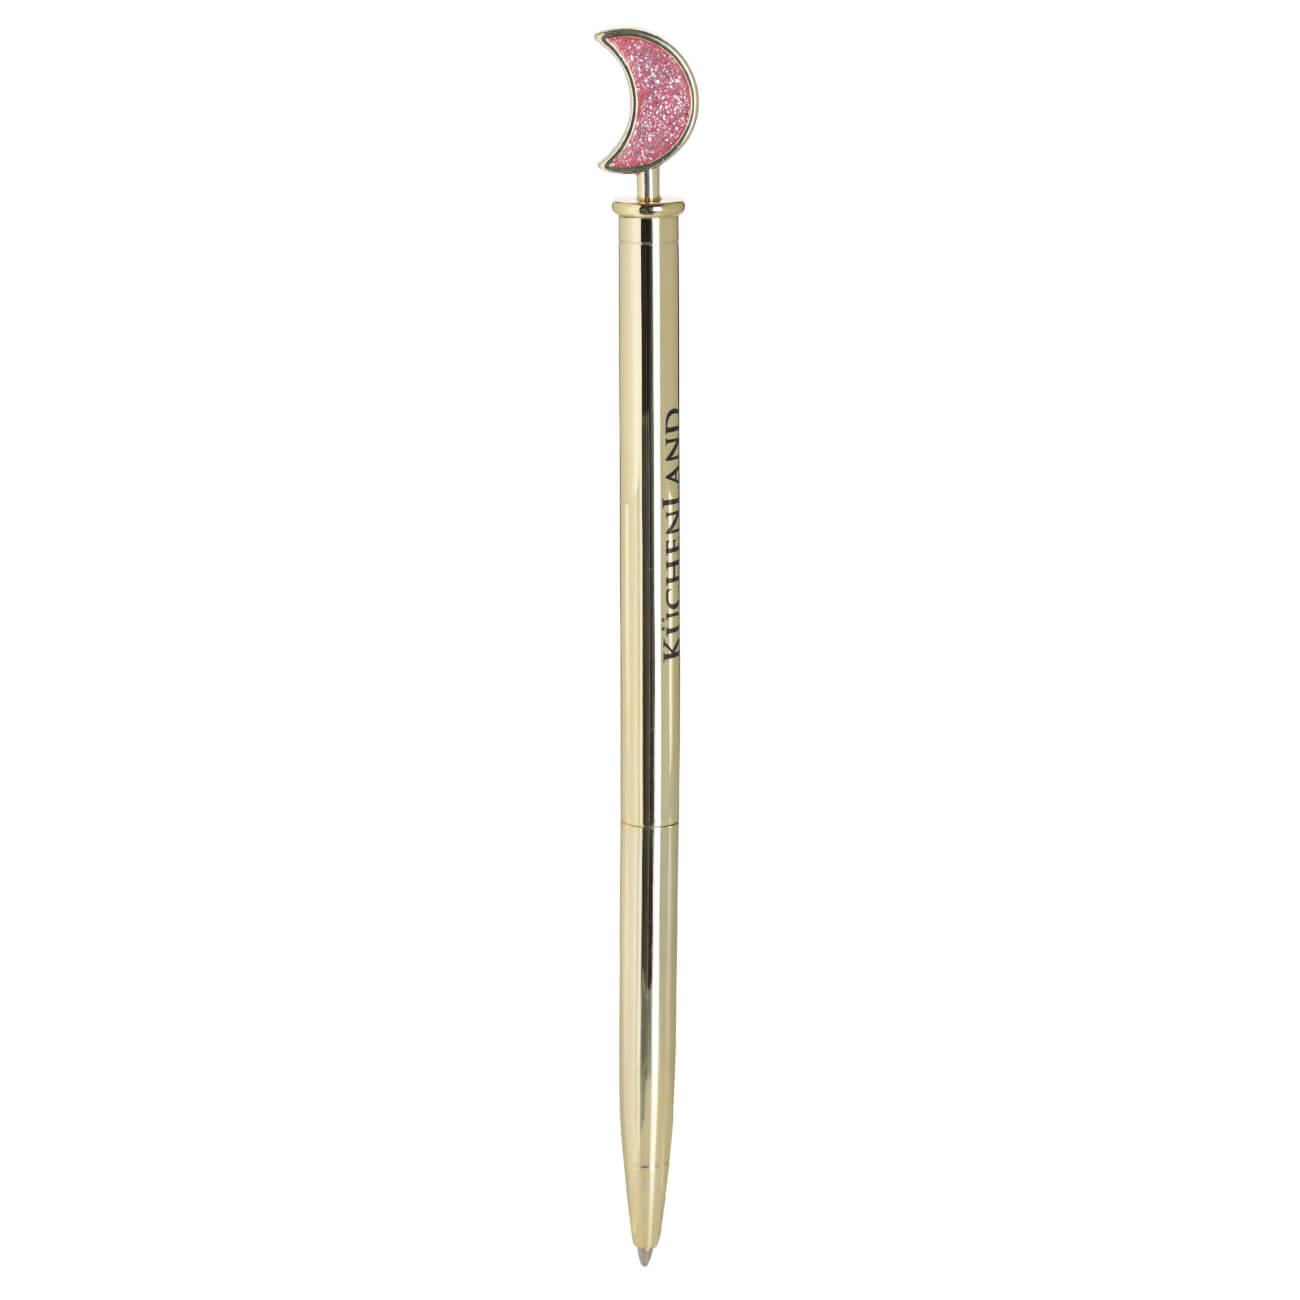 Ручка шариковая, 15 см, с фигуркой, металл, золотистая, Луна, Draw figure ручка подарочная шариковая поворотная в пластиковом футляре